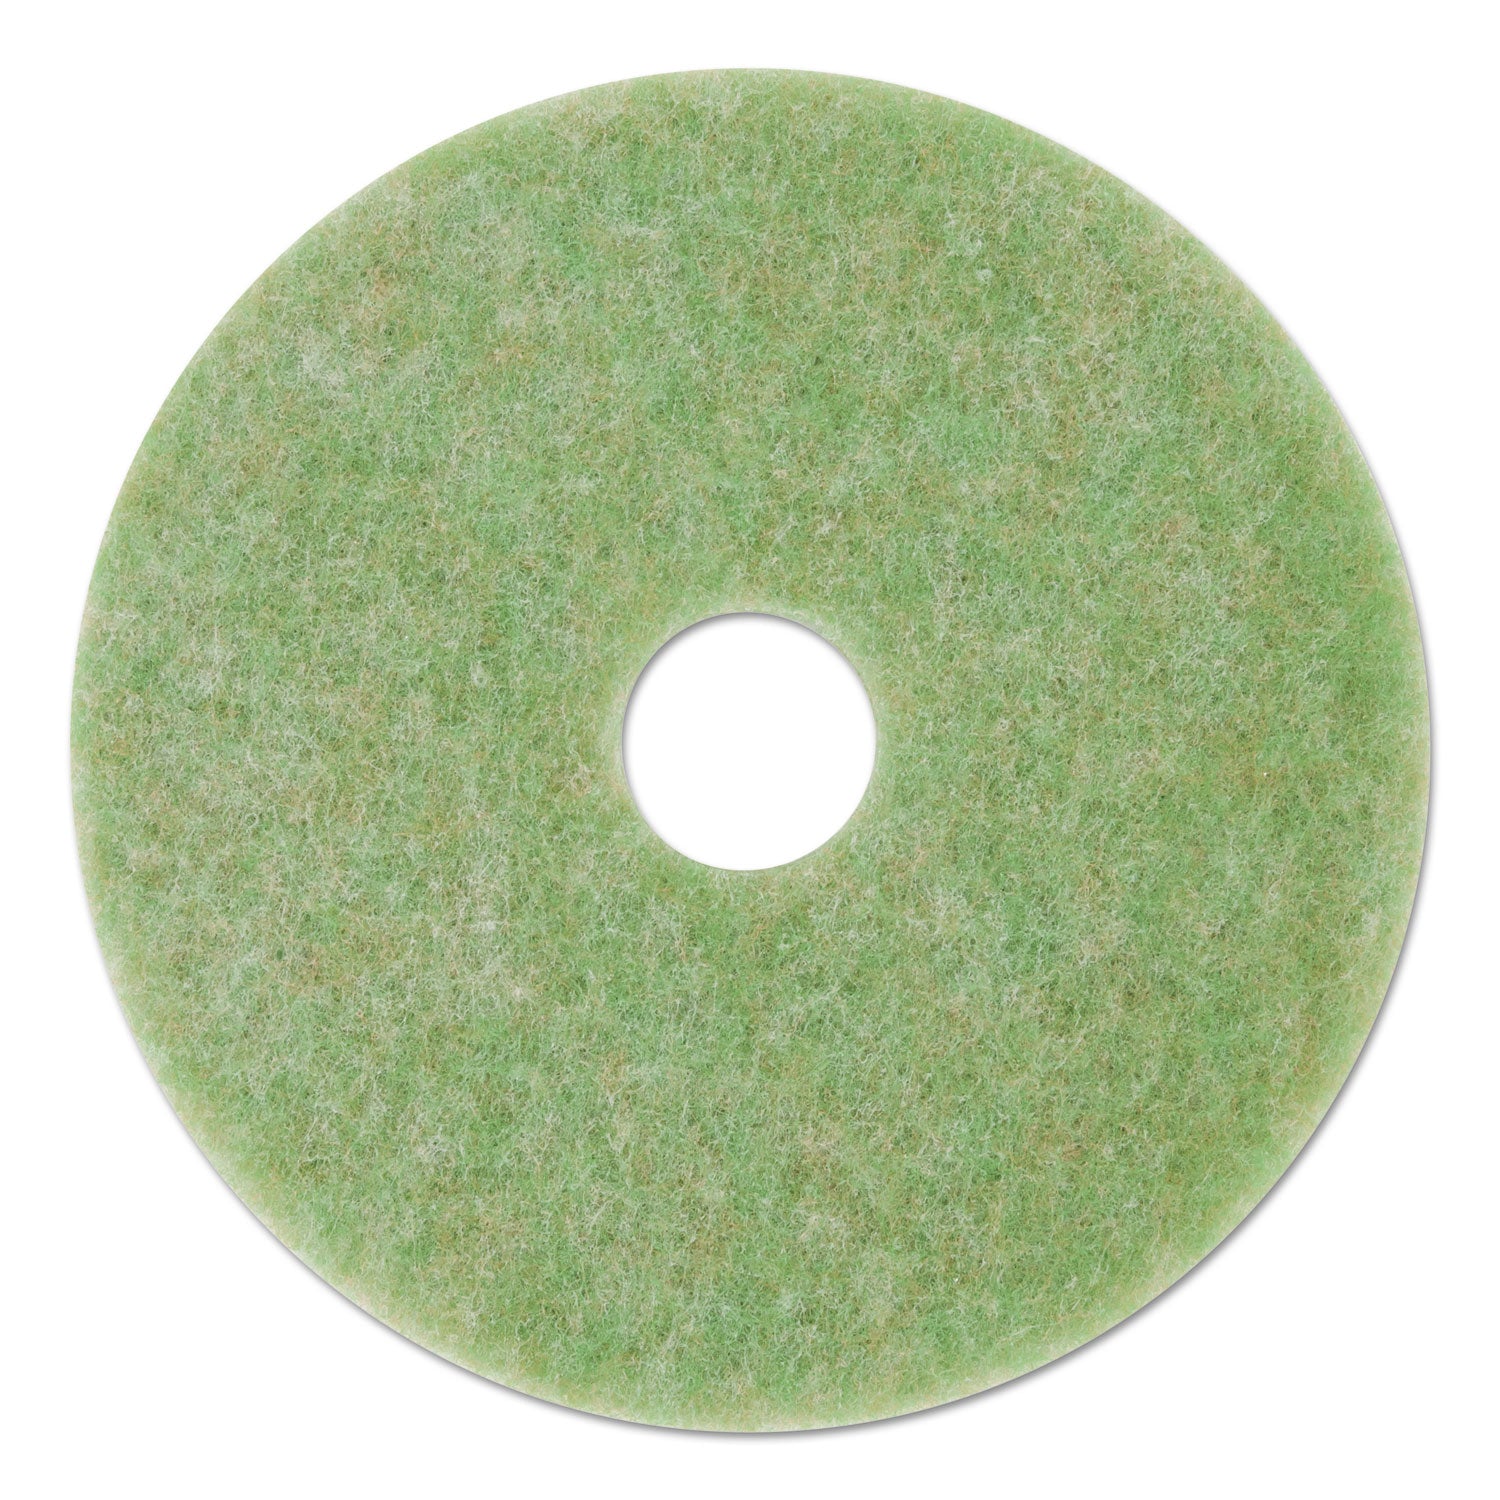 low-speed-topline-autoscrubber-floor-pads-5000-20-diameter-green-amber-5-carton_mmm18052 - 1